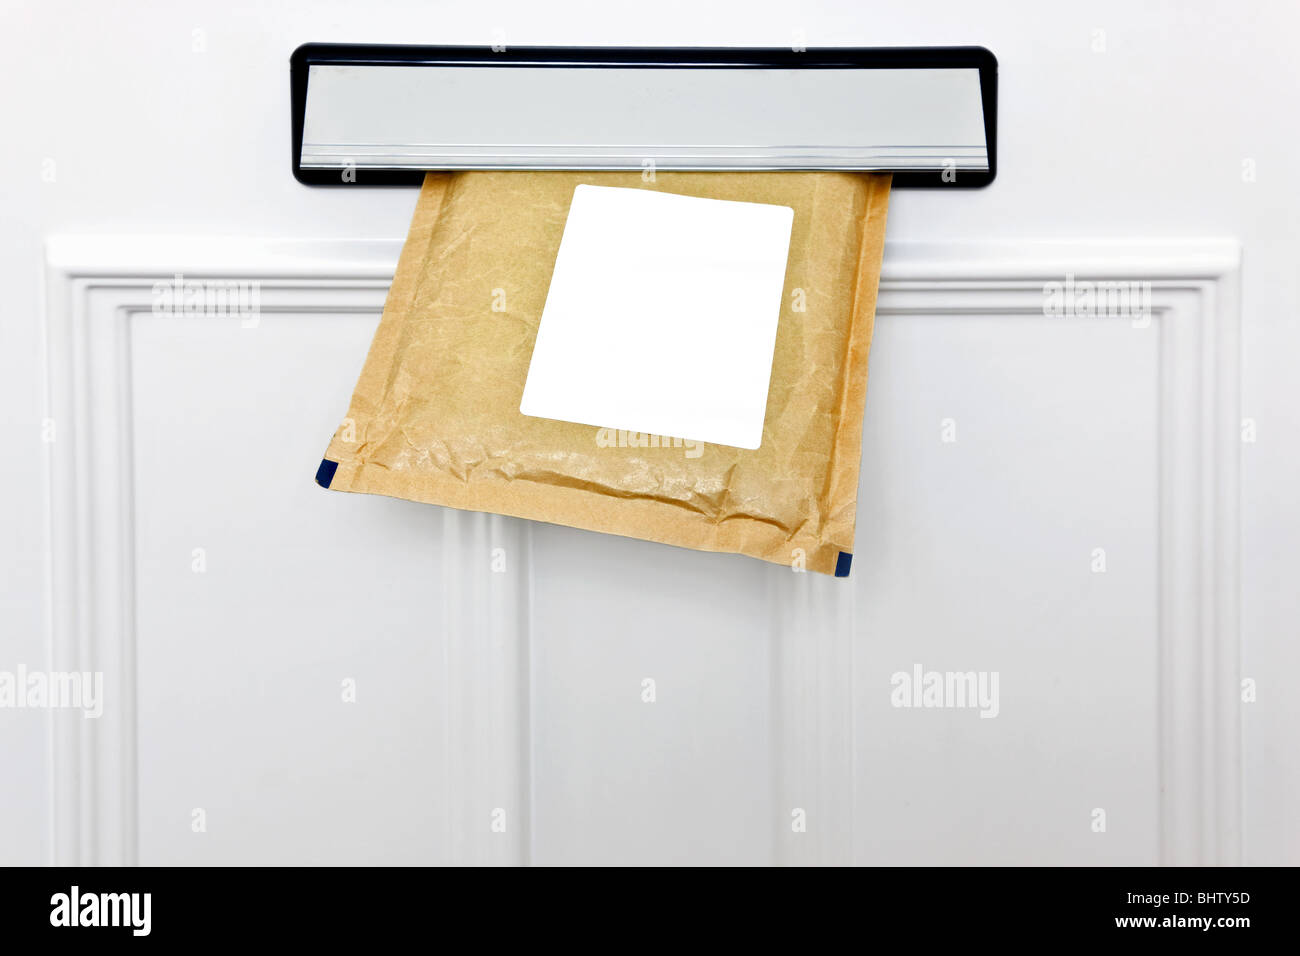 Un sobre acolchado en el buzón de un blanco puerta delantera, etiqueta en blanco para que usted pueda añadir su propio nombre y dirección. Foto de stock